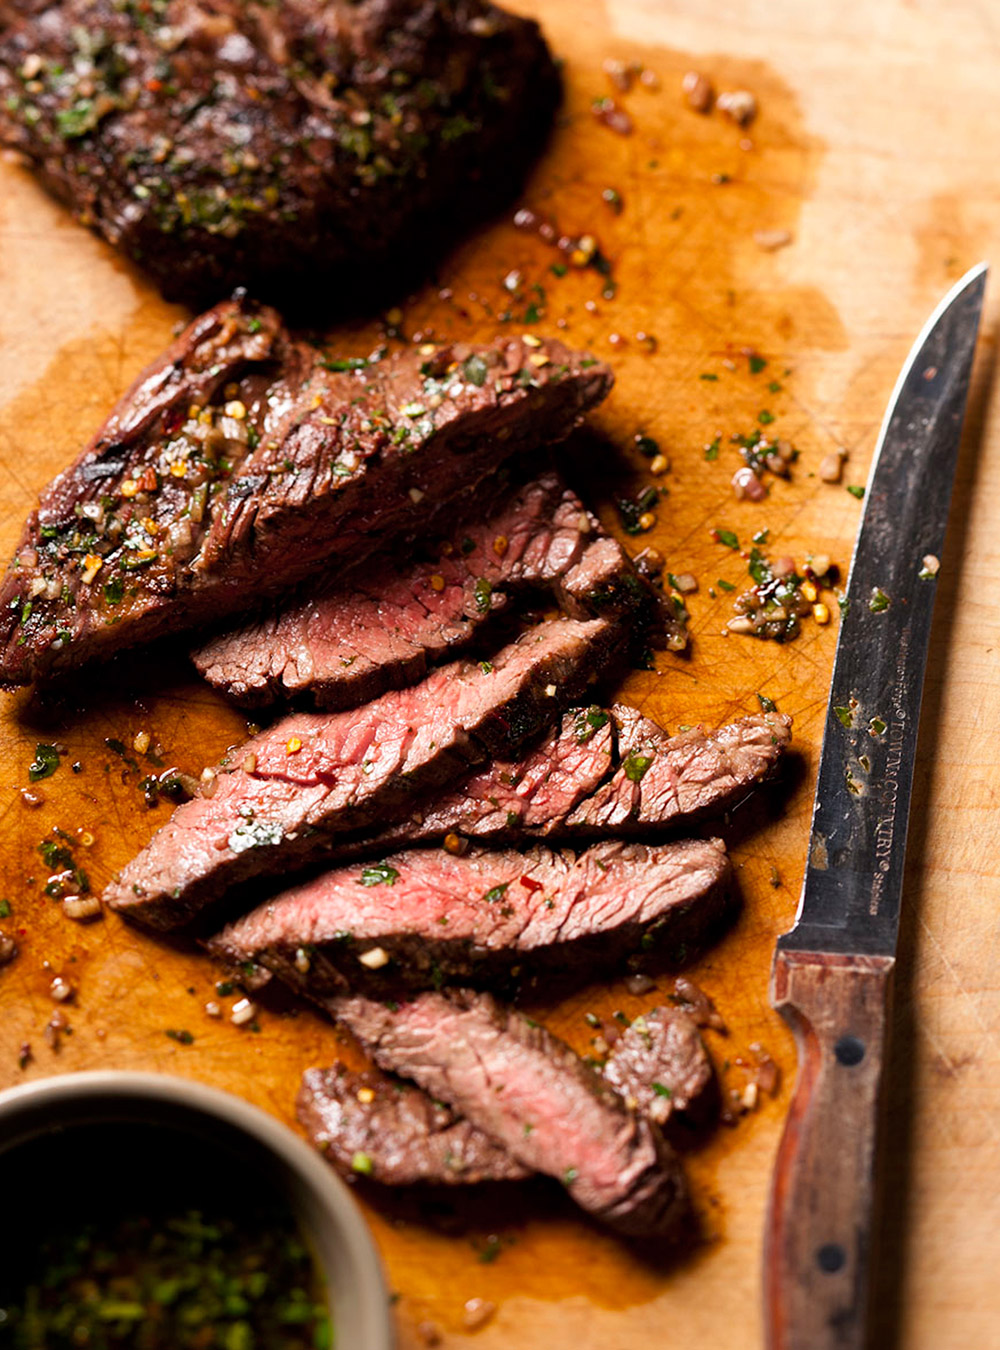 Recette de boeuf: tout sur les rôtis ou les steaks de boeuf  page 4 ...